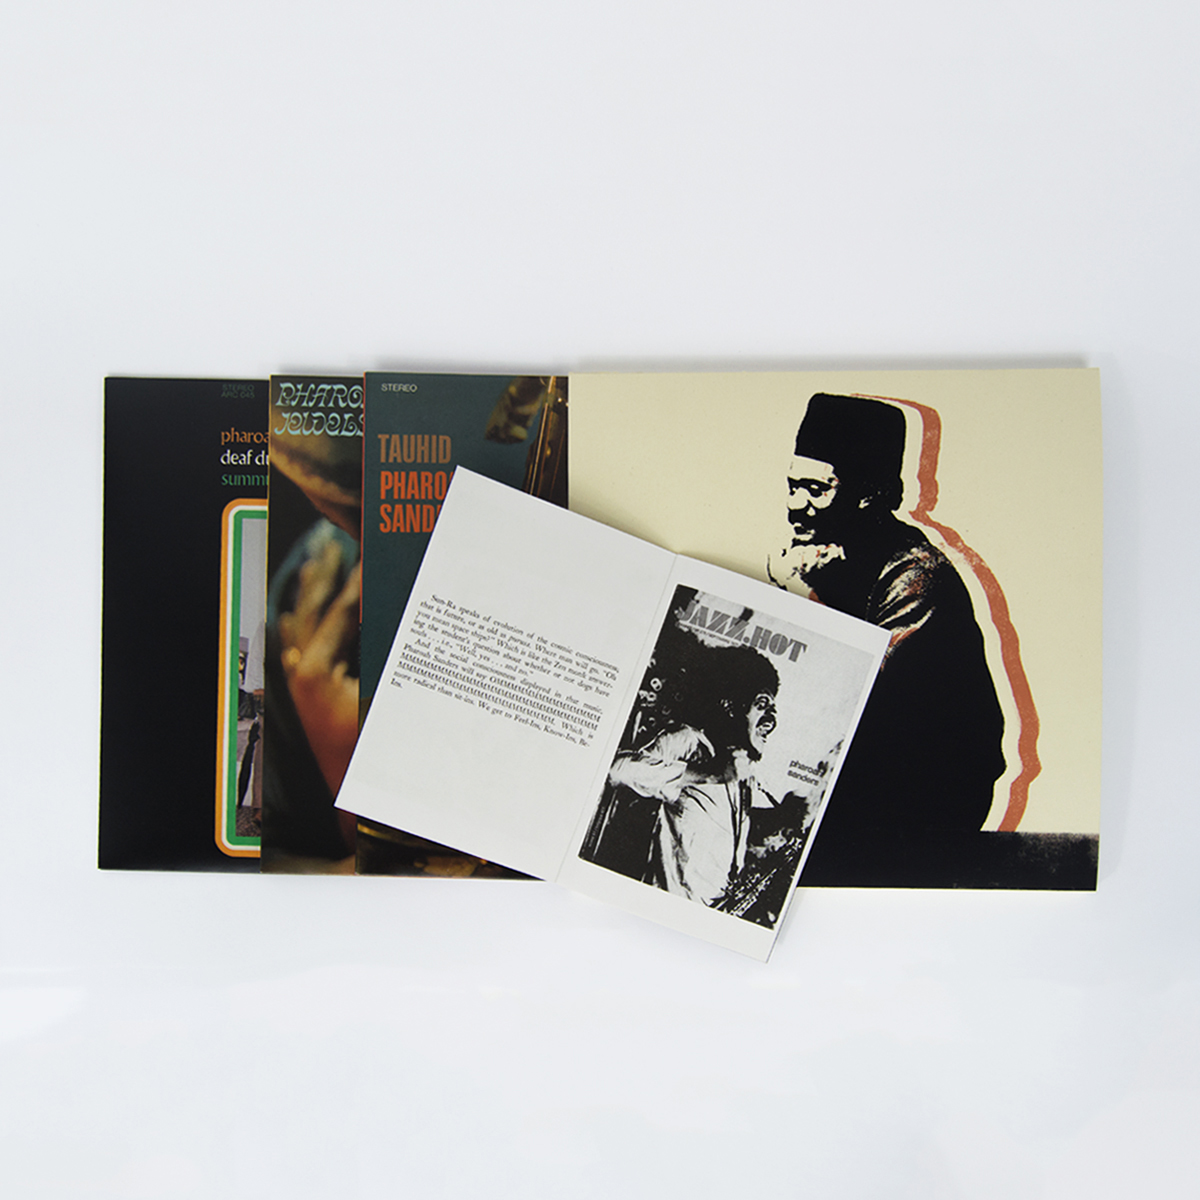 3 Pharoah Sanders LP reissues coming November 10